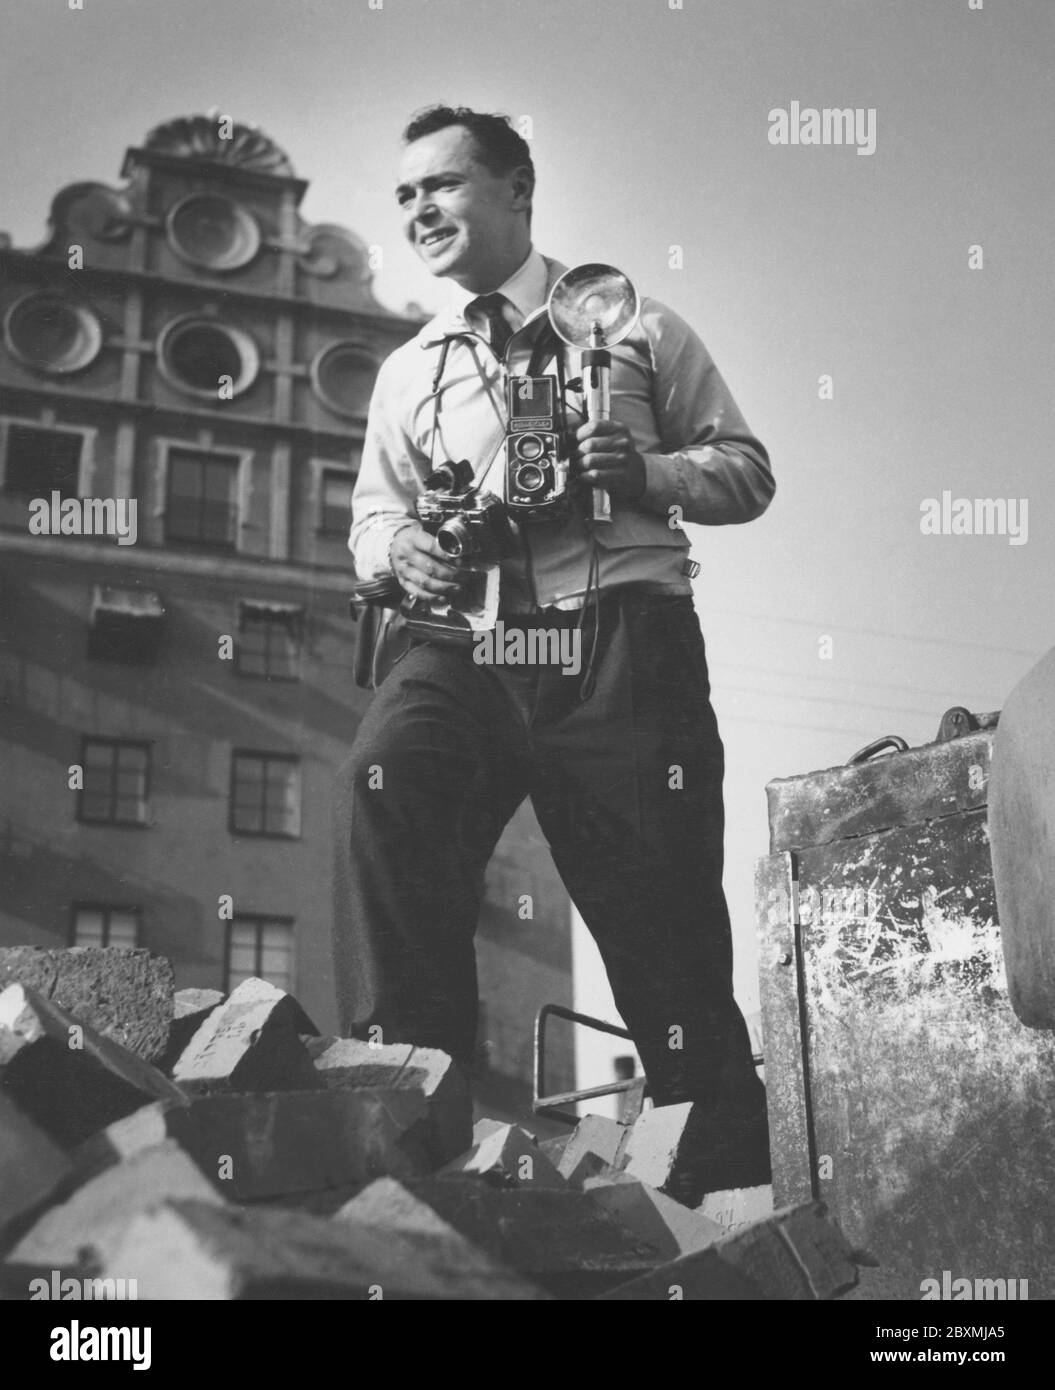 Eliot Elisofon. 1911-1973. Fotografo documentario americano e fotogiornalista. Dal 1942 al 1964 è stato fotografo dello staff della rivista Life. Qui a Stoccolma, Svezia, quando è in missione per fotografare i campioni svedesi Gunder Hägg e Arne Andersson quando si gareggiano sullo Stockholms stadion. 1944 Foto Stock